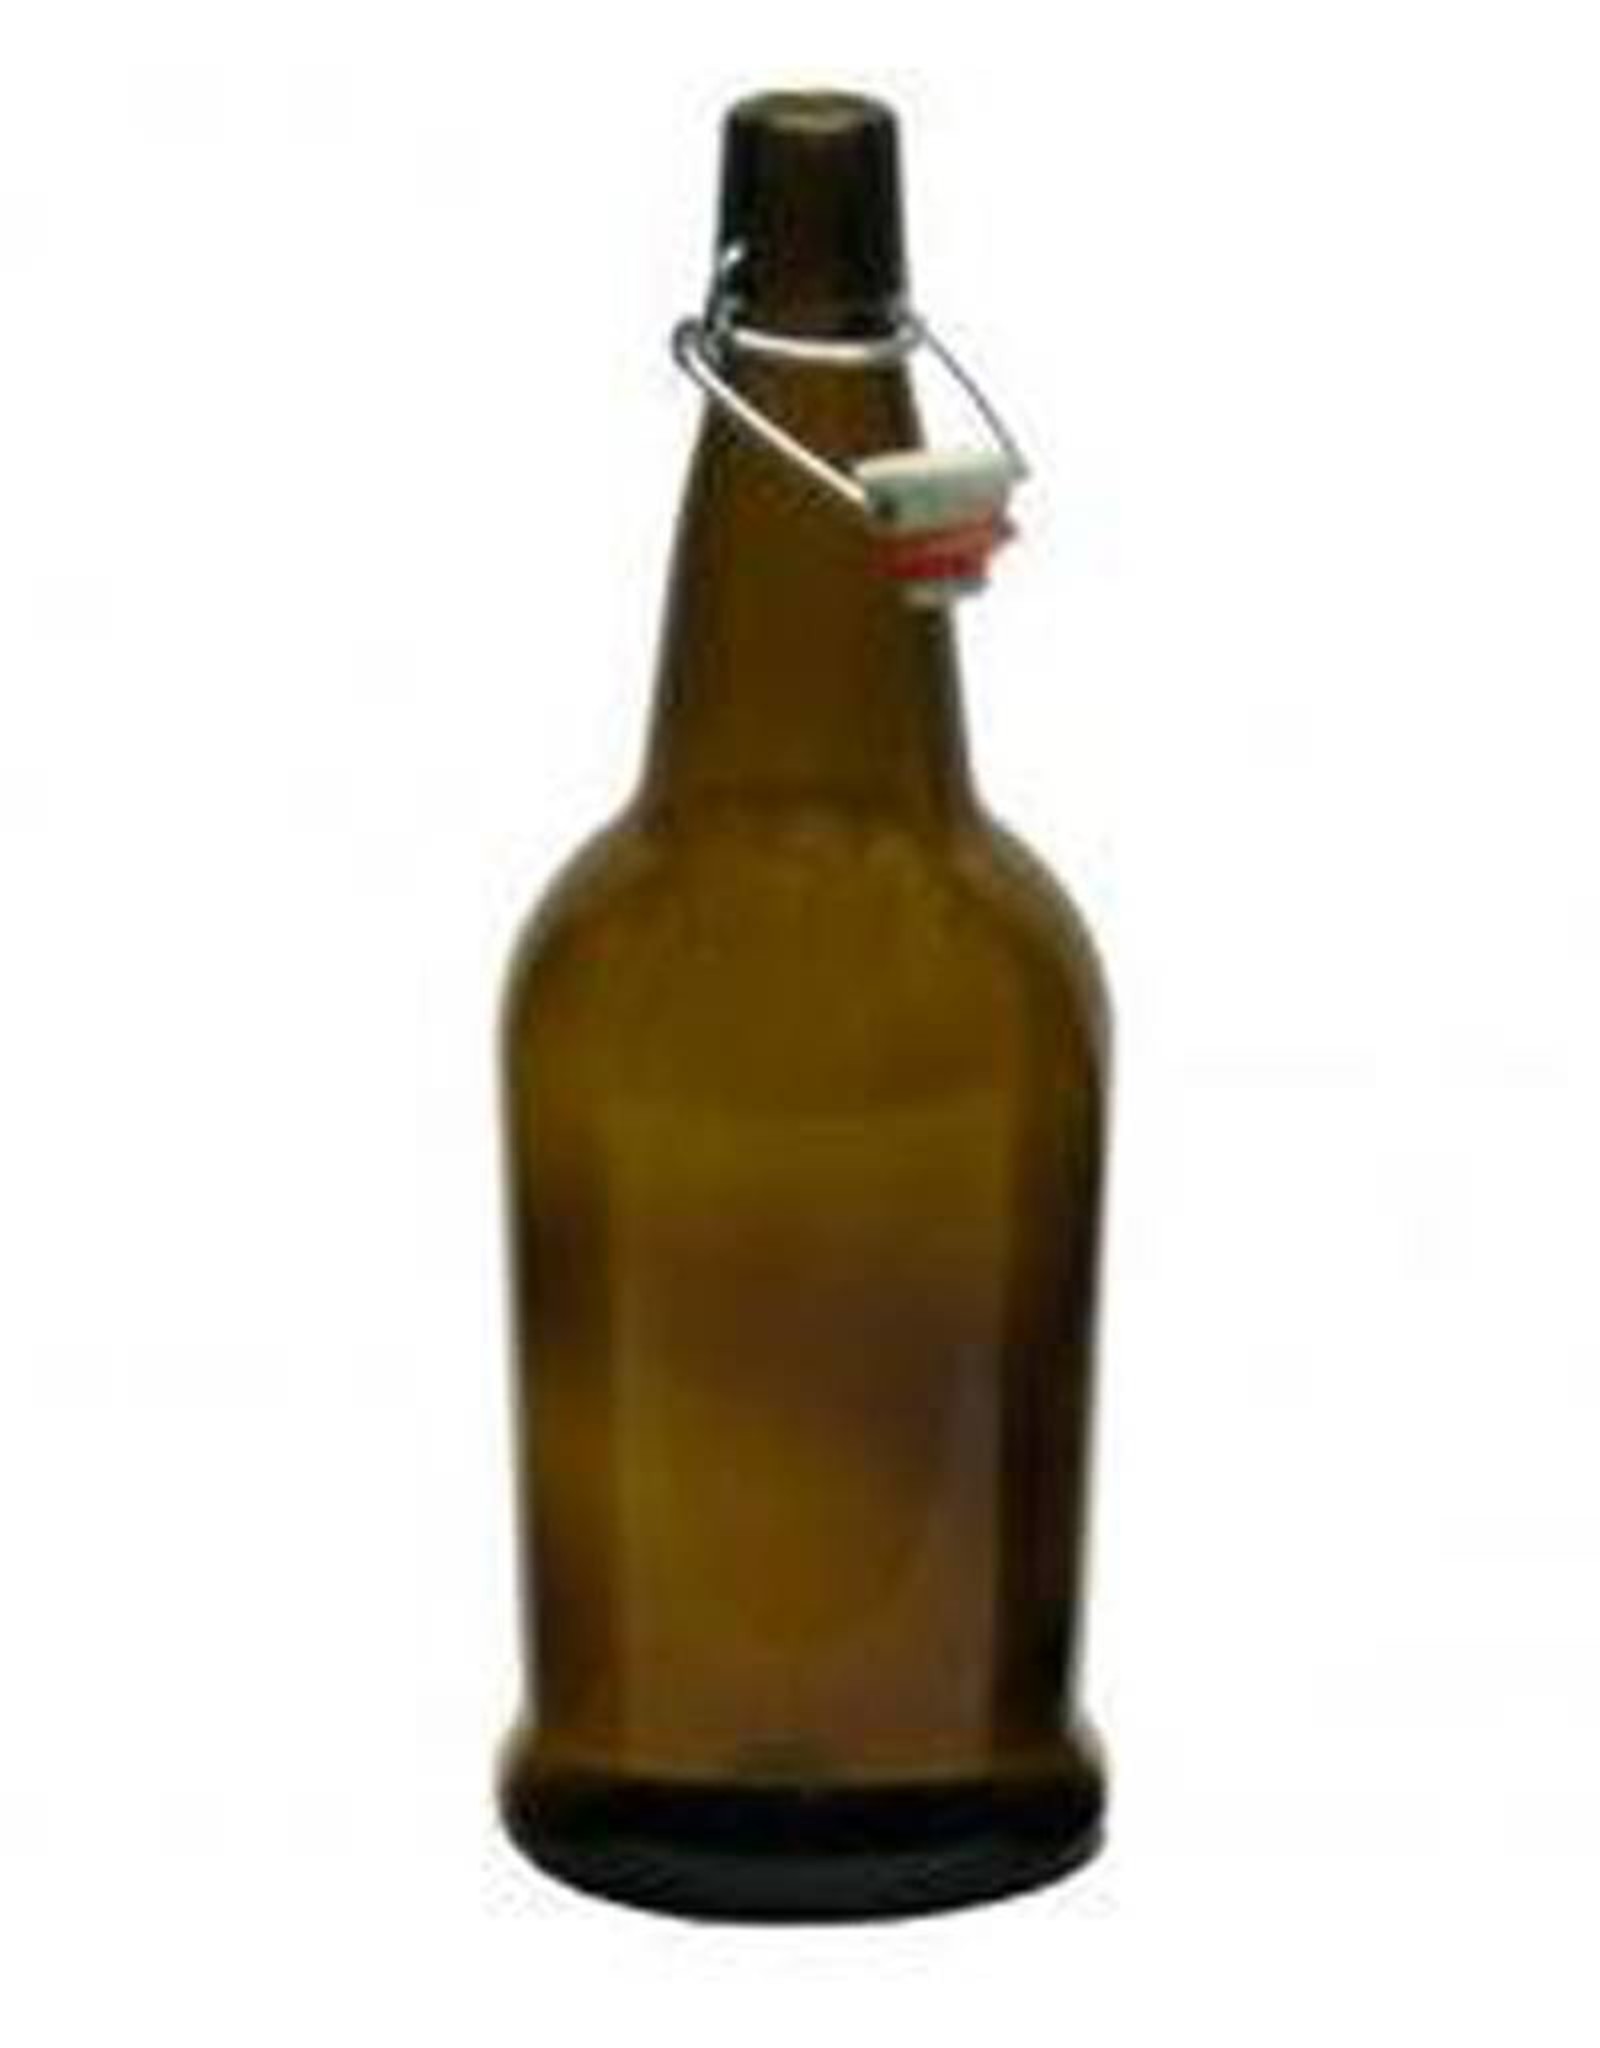 https://cdn.shoplightspeed.com/shops/615474/files/7835470/1600x2048x1/ez-cap-1-liter-amber-bottle-case-12.jpg